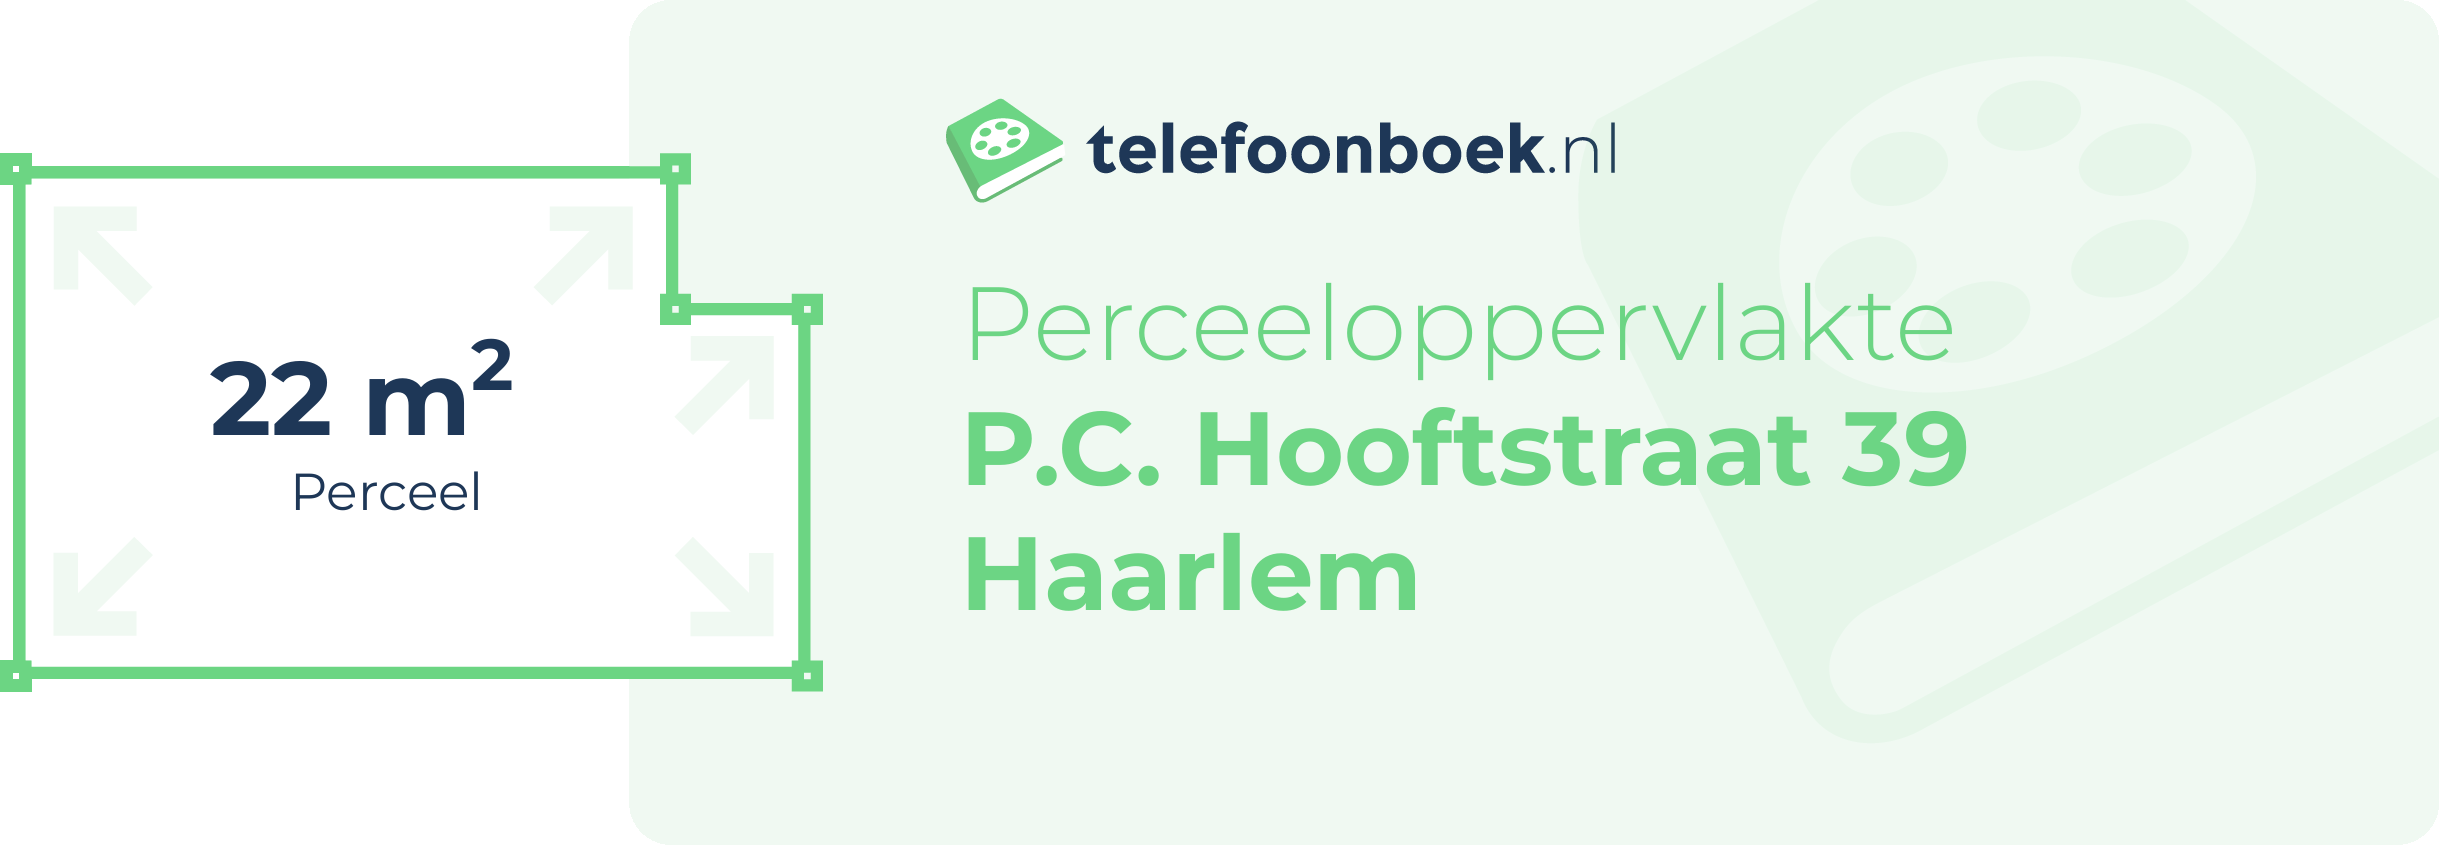 Perceeloppervlakte P.C. Hooftstraat 39 Haarlem